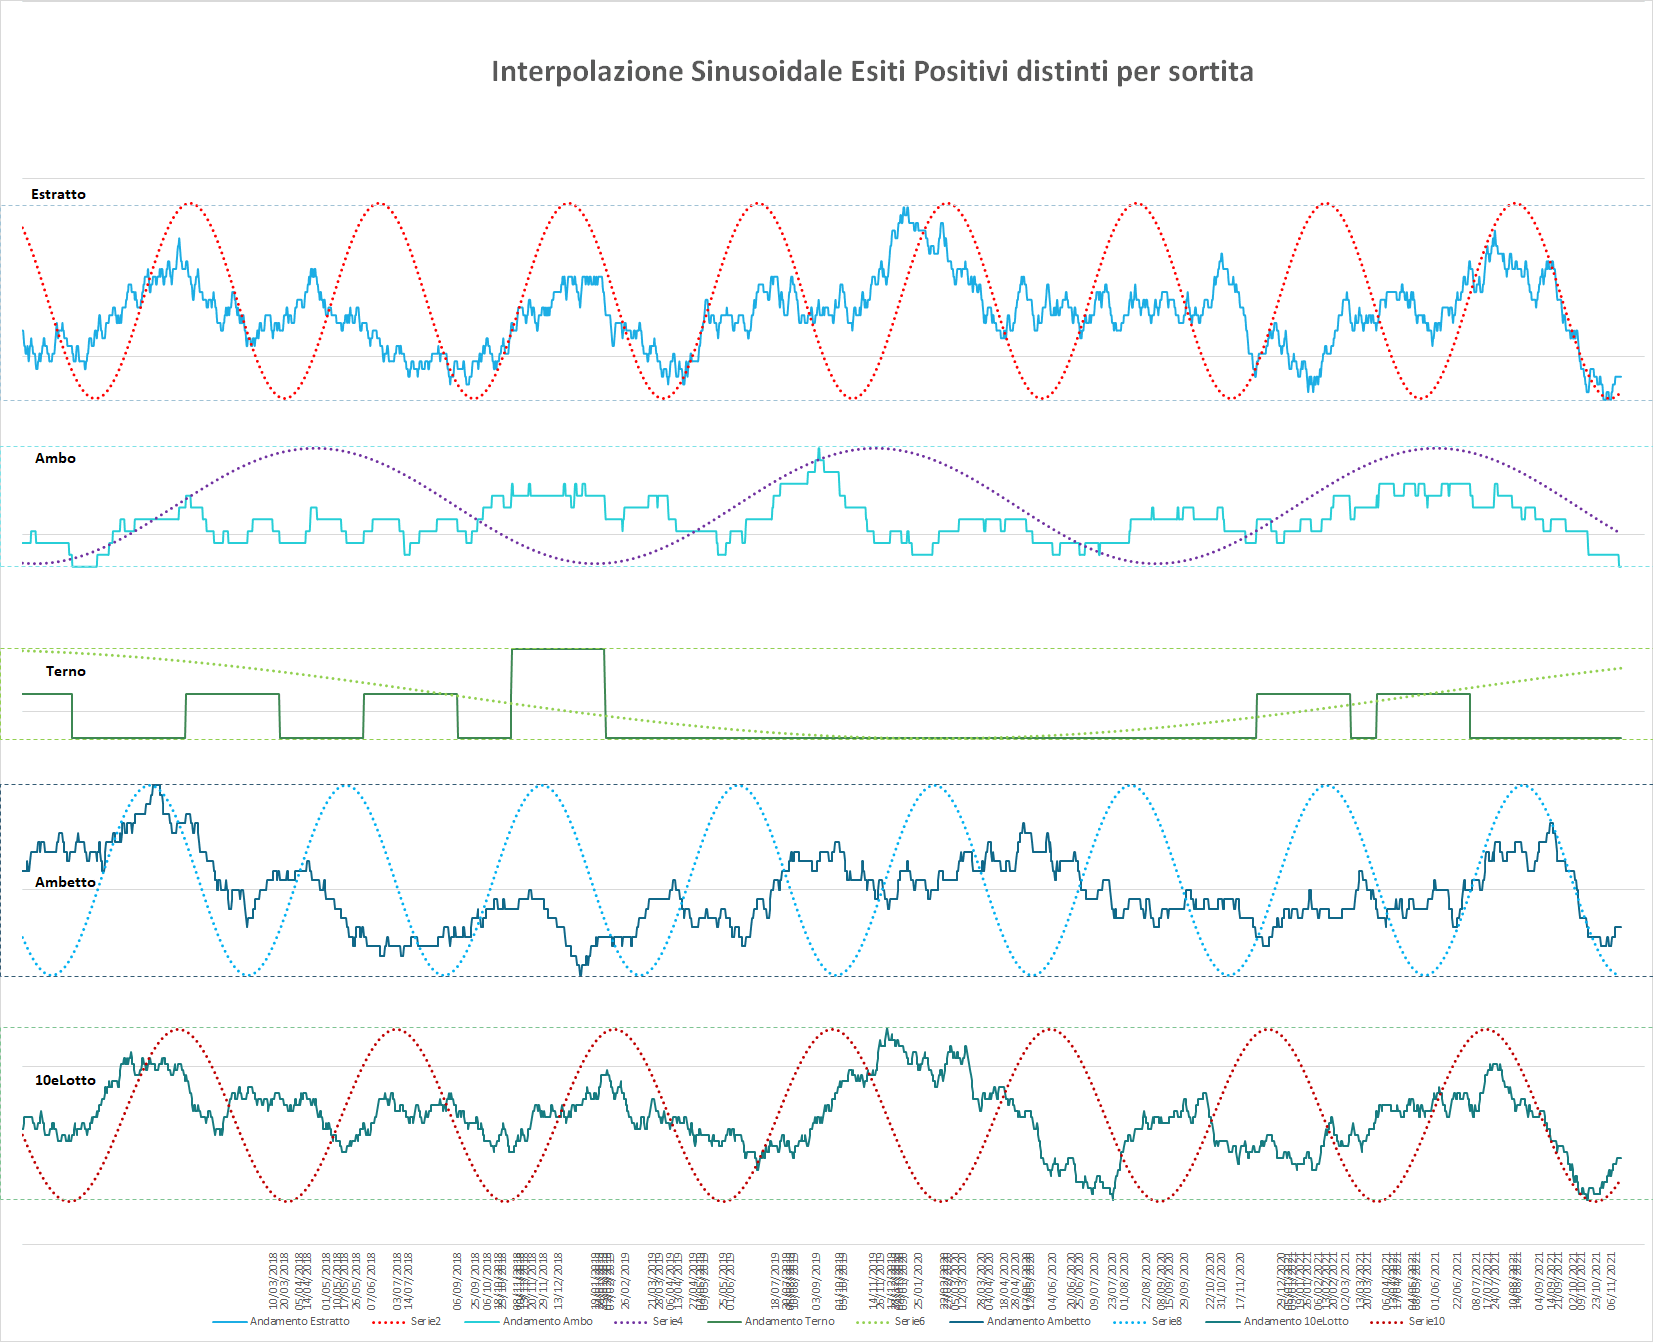 Ipotetico andamento sinusoidale interpolante per le medie delle varie sortite - Aggiornato all'estrazione precedente il 16 Novembre 2021